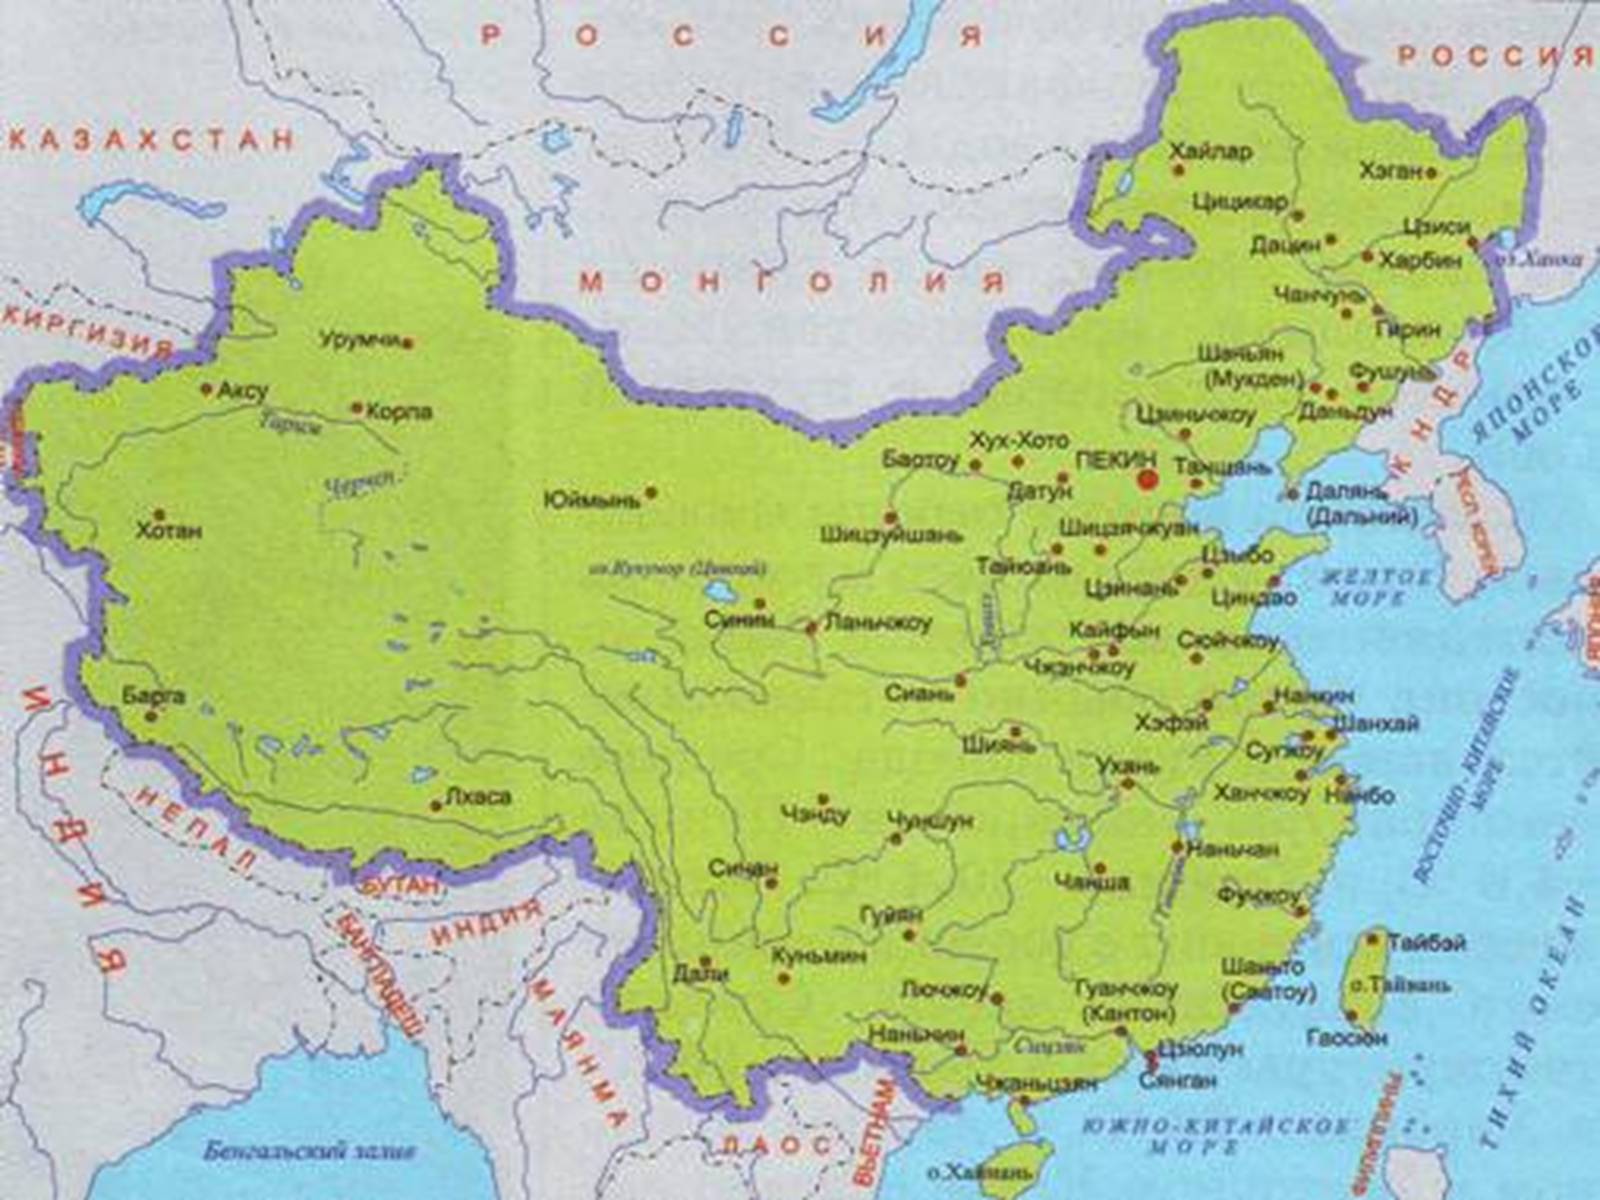 Где располагался древний китай. Великая китайская равнина границы на карте. Великая равнина Китая на карте. Великая киьайская Ровнина на карте. На карте Великая китайская равнина на карте.